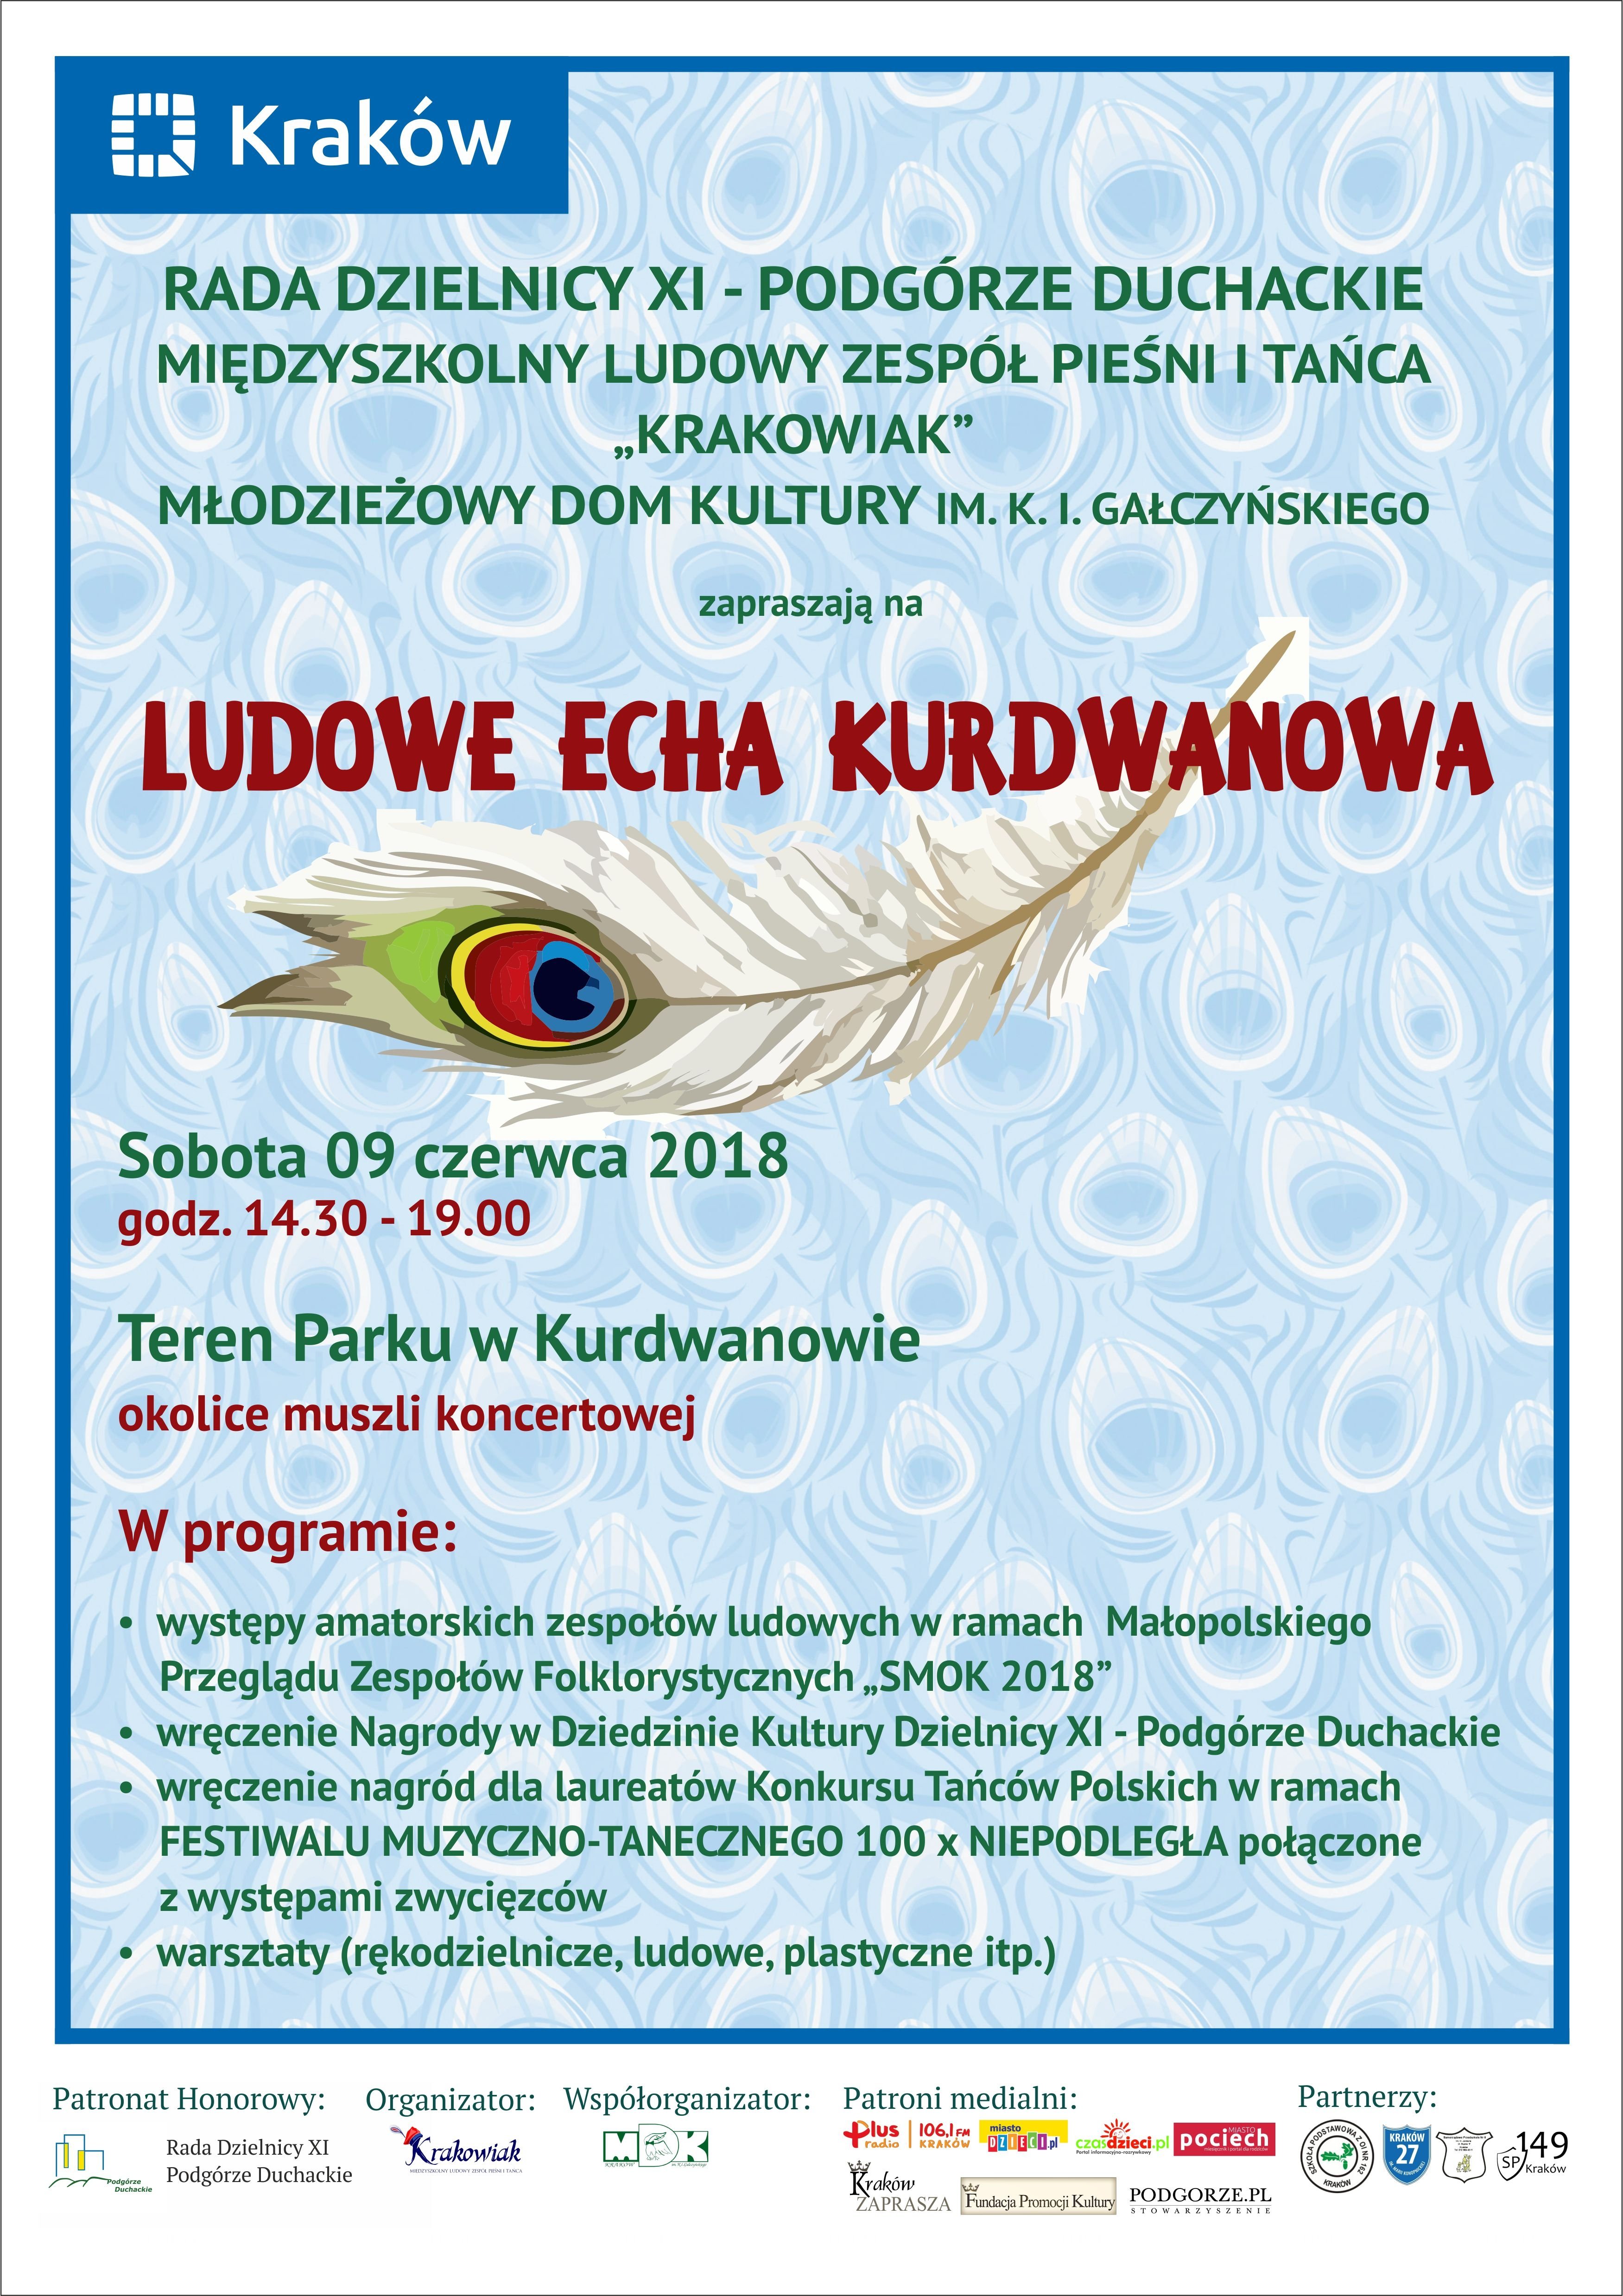 Ludowe Echa Kurdwanowa - święto folkloru